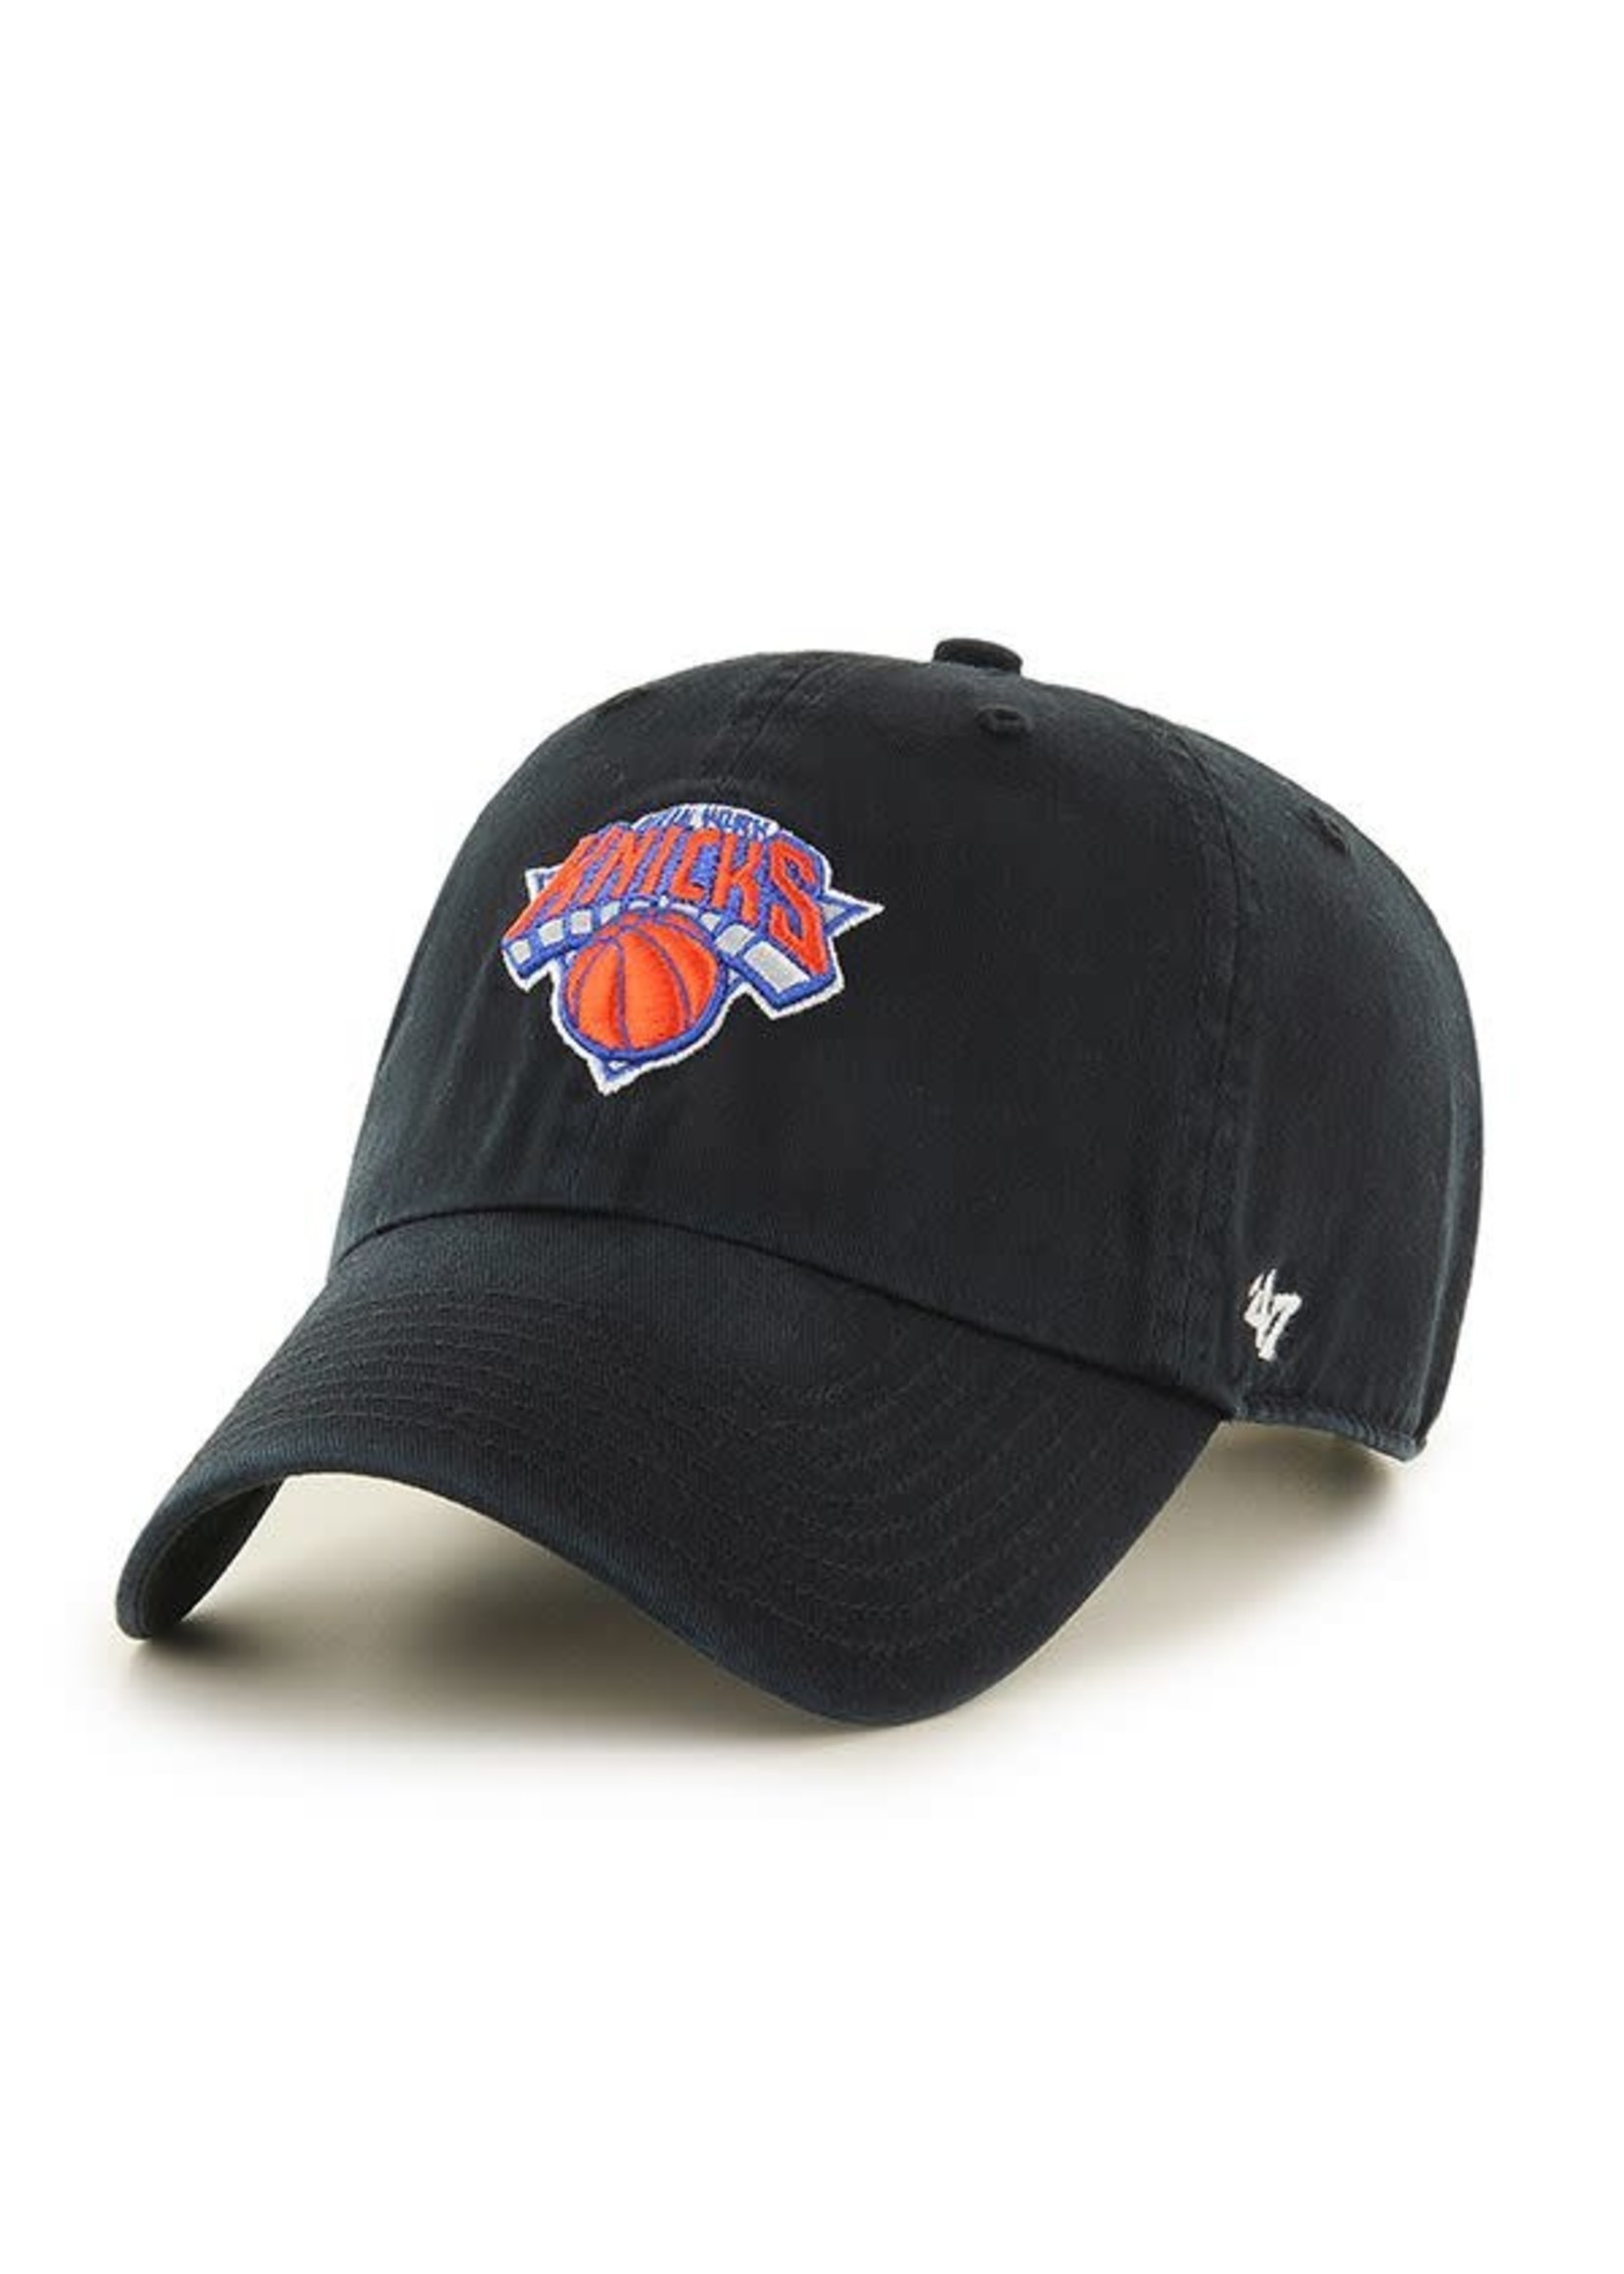 47 brand 47 casquette clean up noir New York Knicks